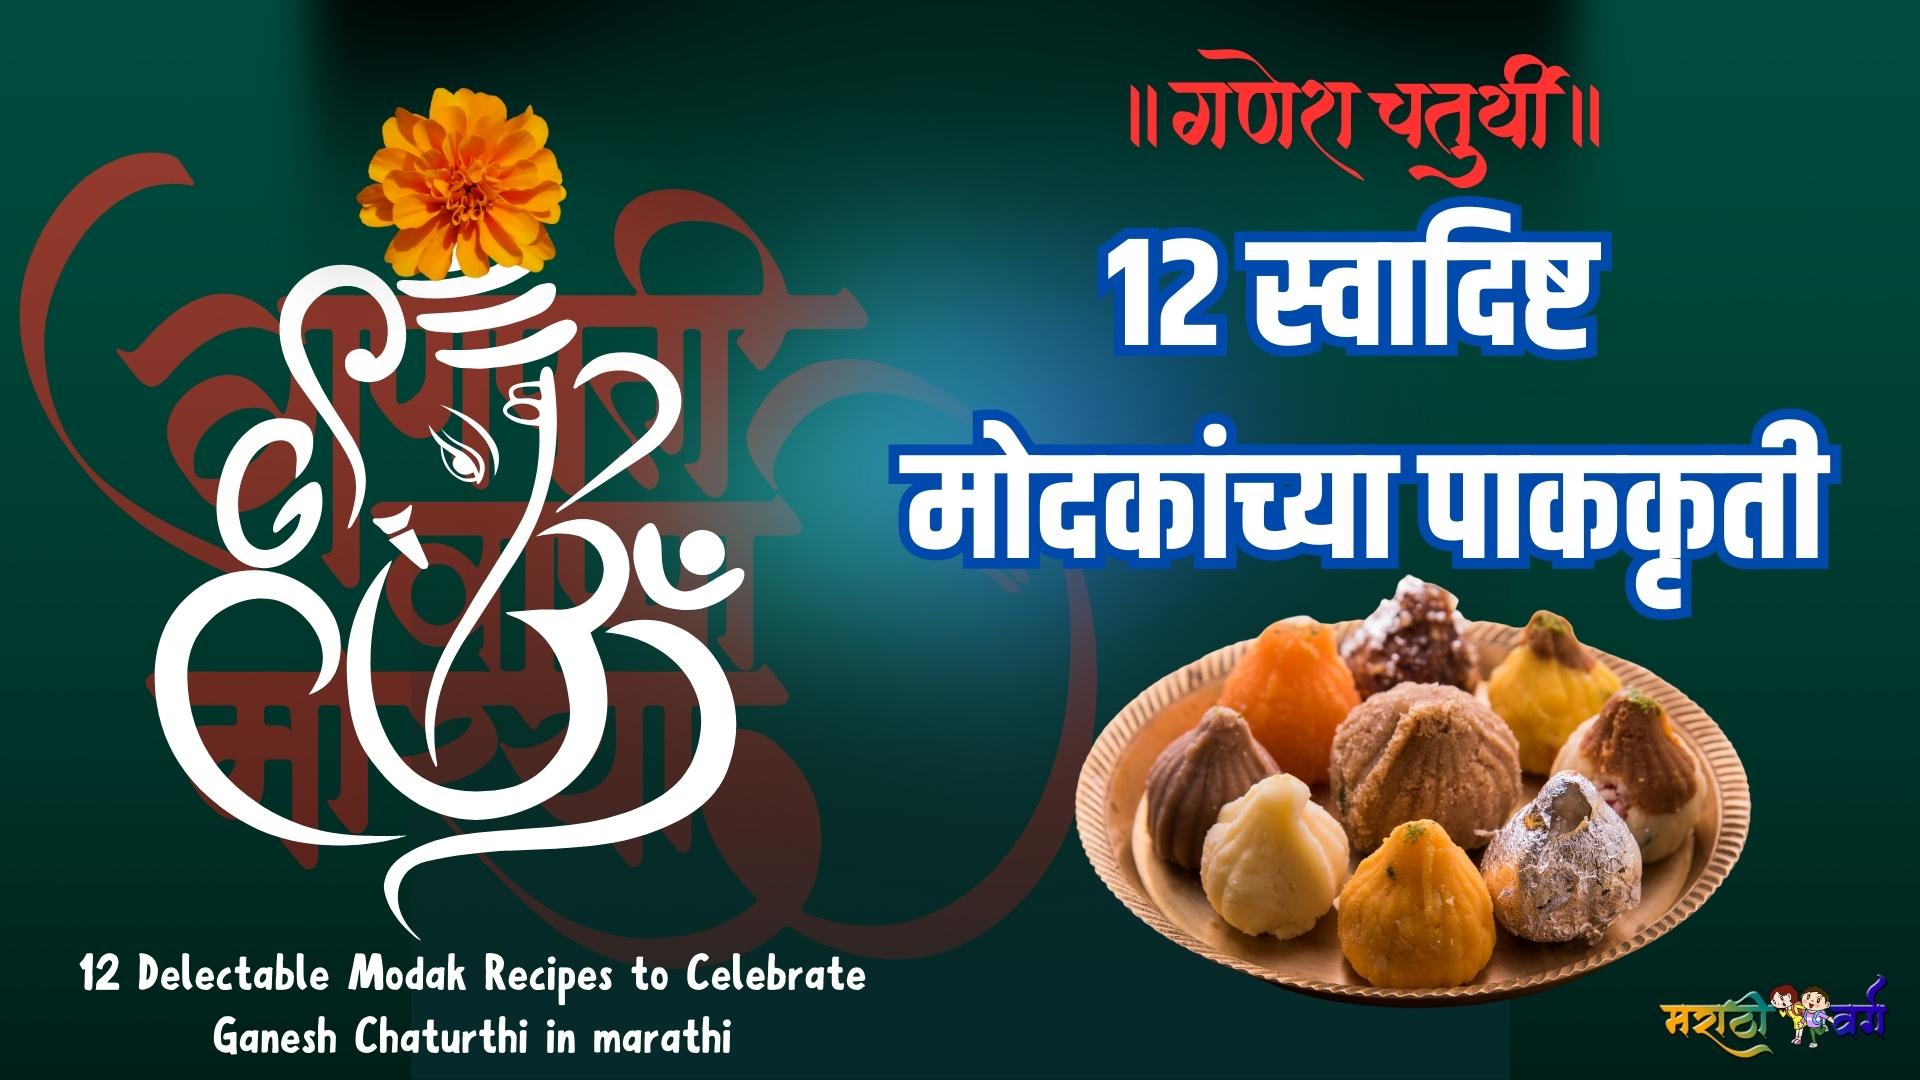 12 Delectable Modak Recipes to Celebrate Ganesh Chaturthi in marathi